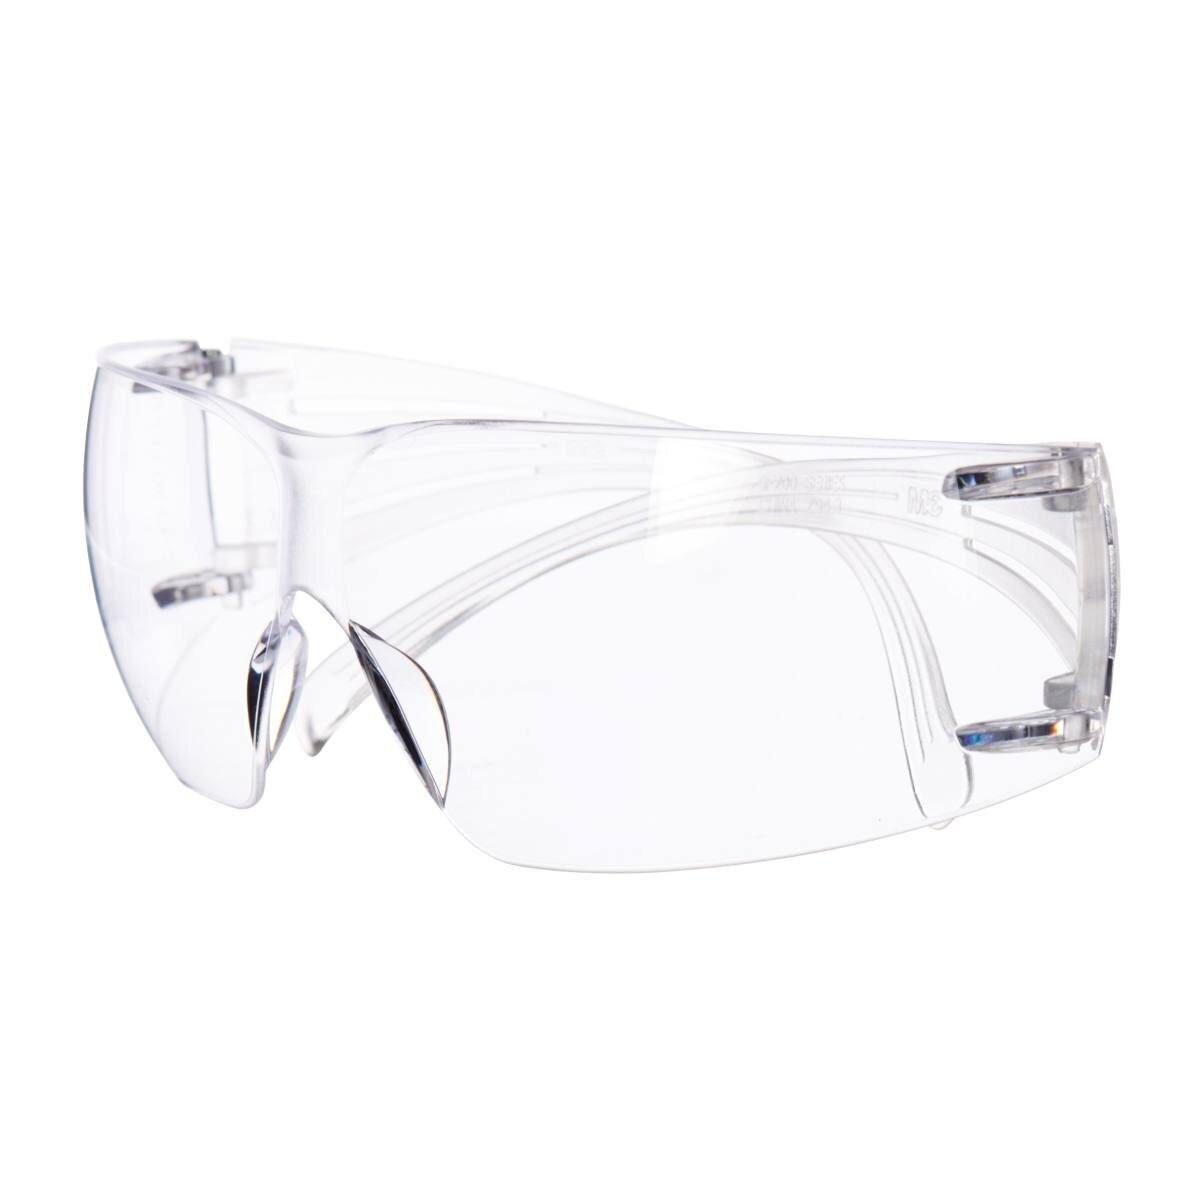 Gafas de protección 3M SecureFit 400 Reader, patillas negras/verdes, tratamiento antirrayas/antivaho, lente transparente con resistencia 1,5, SF415AS/AF-EU